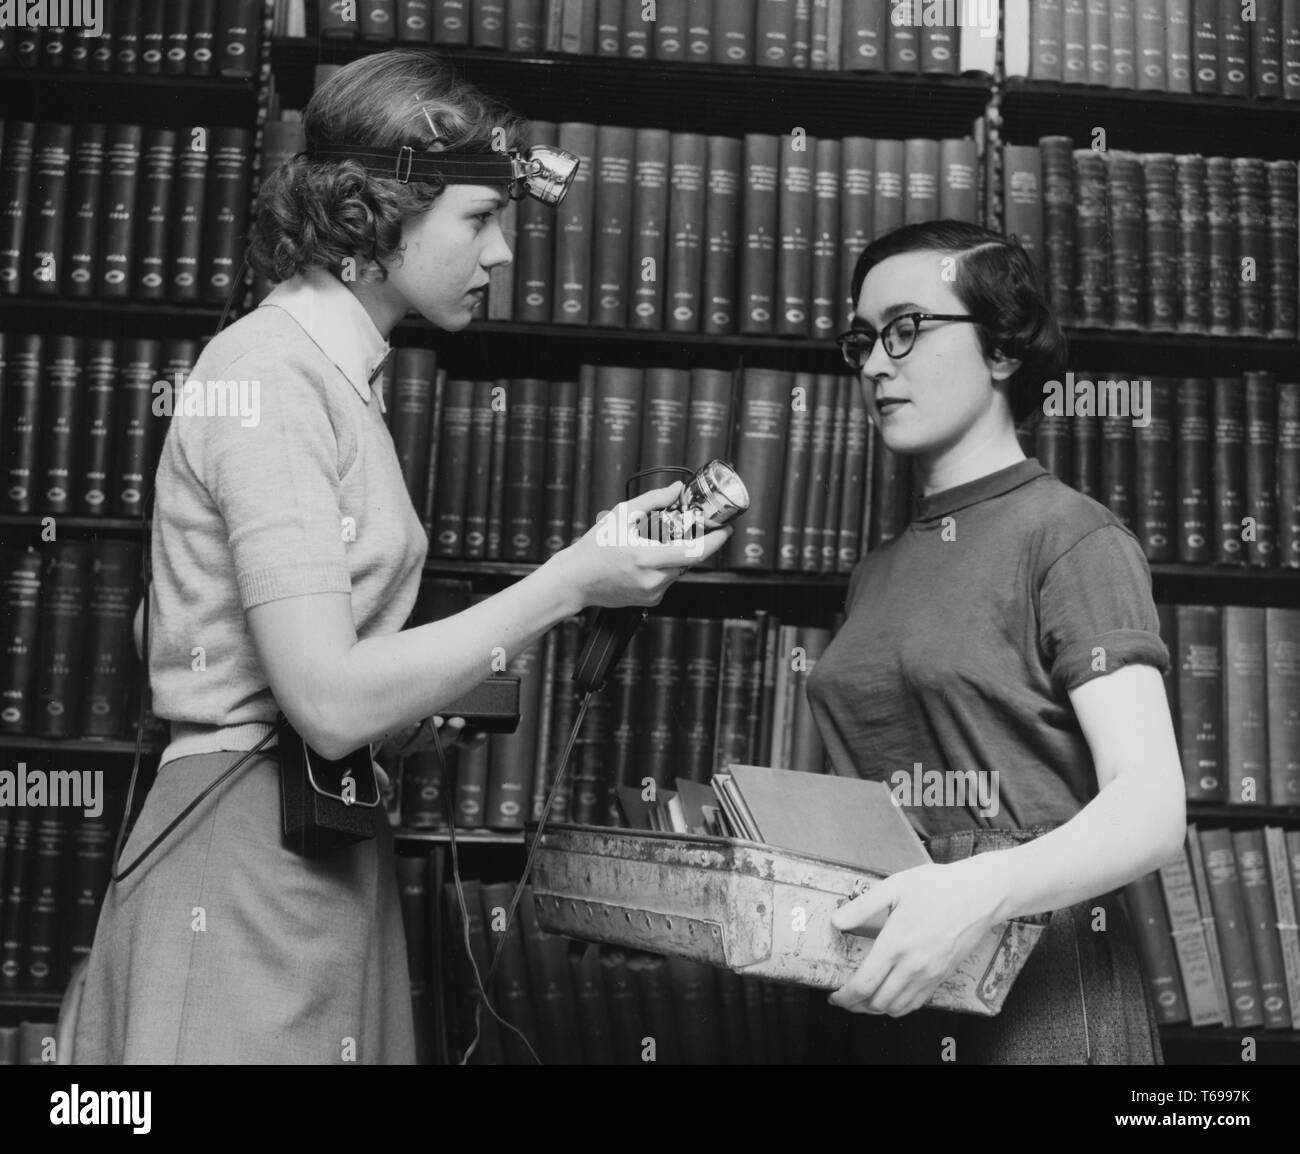 Schwarz-weiß Foto von zwei schlanken, dunkelhaarigen jungen Frauen, wahrscheinlich, Bibliothekare, steht im Profil, die sich einander gegenüber; die Frau an der Linken, der trägt ein Band mit einer Lampe um ihren Kopf und einen Akku an ihre Taille, bietet ein zweiter Kopf-Leuchte zu Ihrem Kollegen, dessen Hände mit einem Fach der slim-Bücher oder Zeitungen gefüllt sind; mit Regalen der gebundene Bücher im Hintergrund sichtbar; in der New York Public Library in New York, USA, 1948. Von der New York Public Library. () Stockfoto